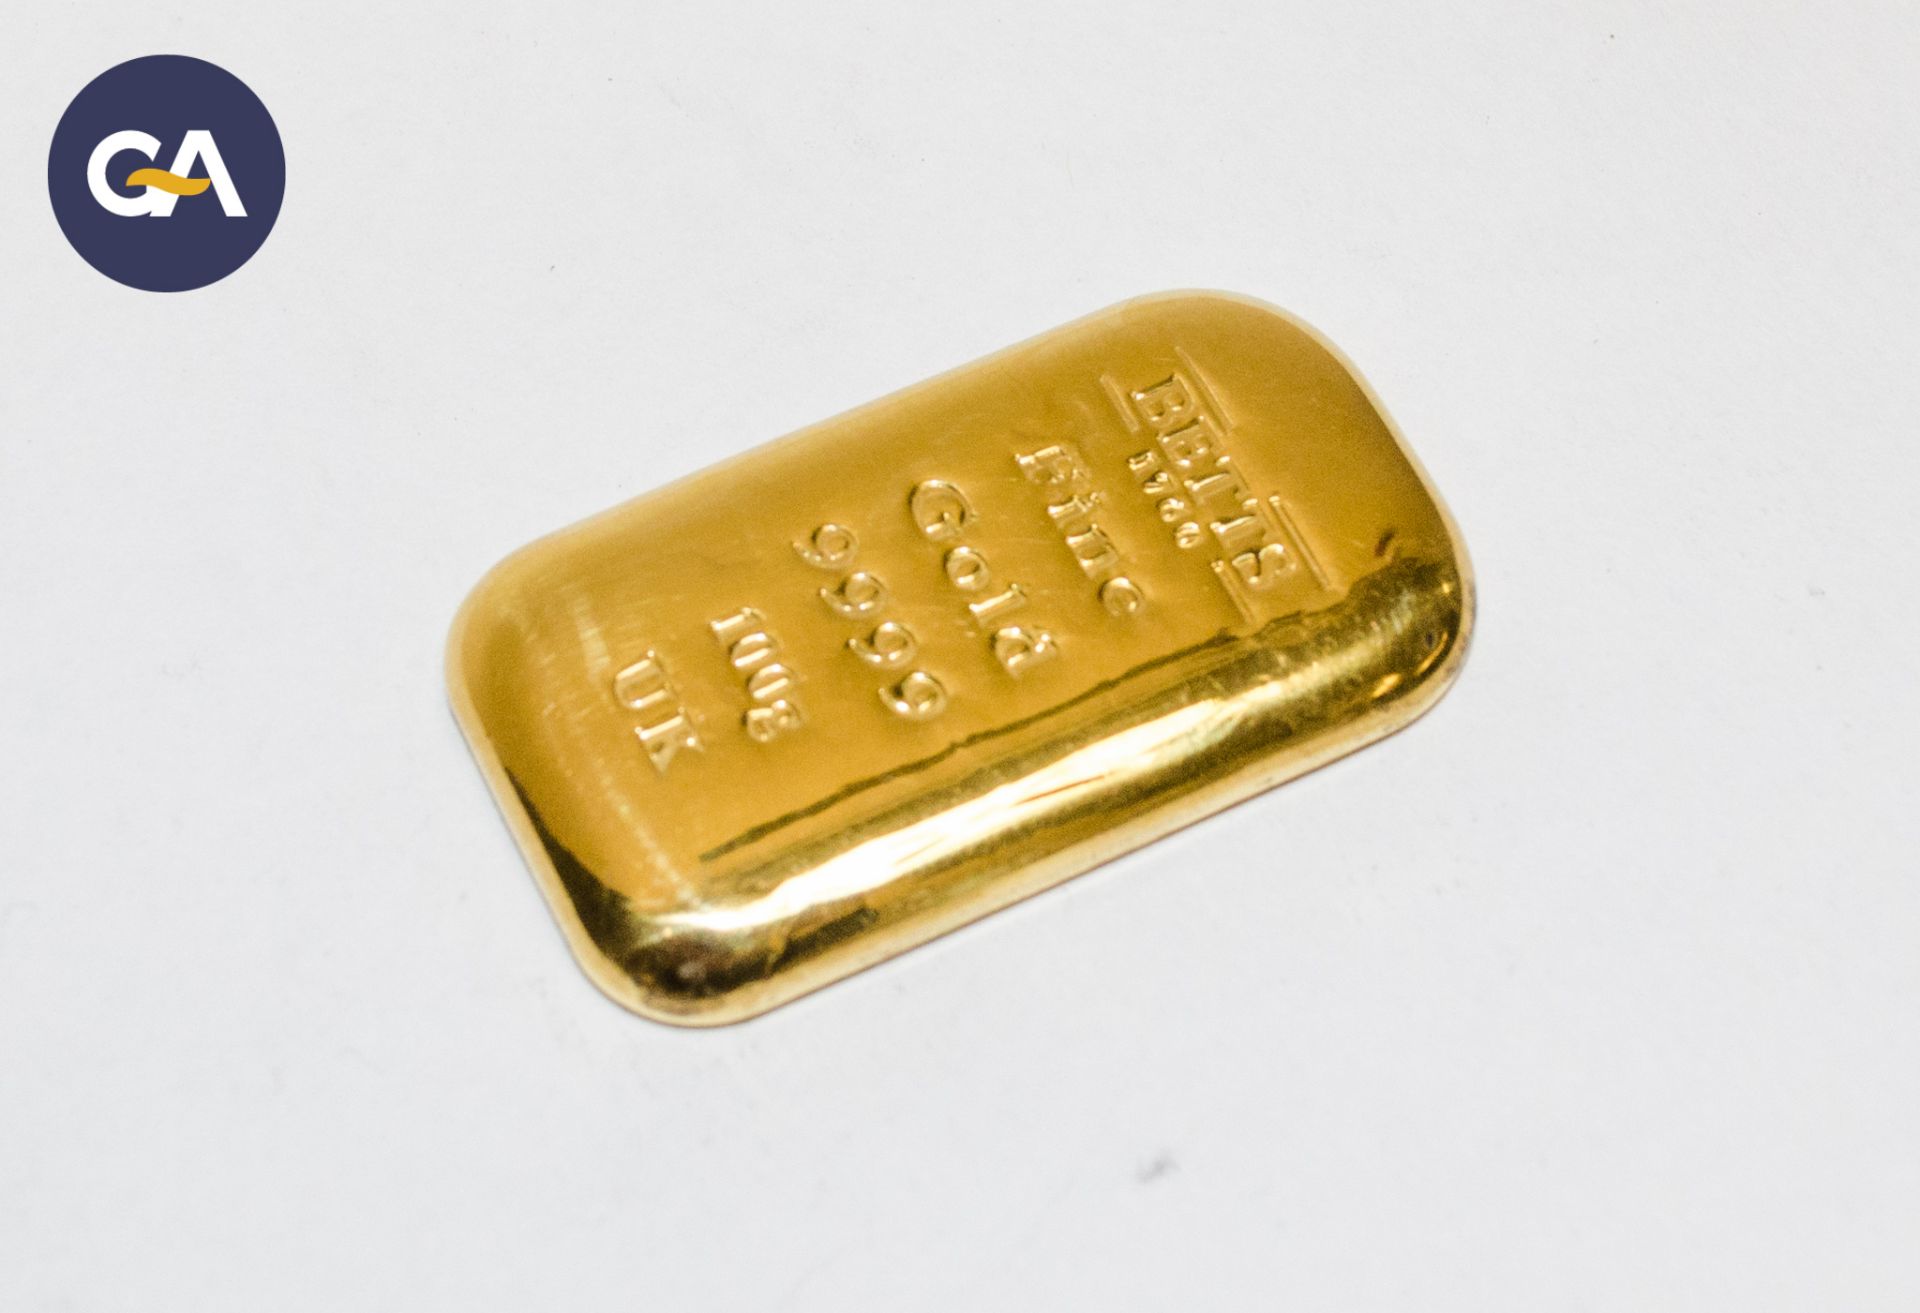 Betts 1760 100 gram 24 carat 9999 stamped 99.99% fine gold bullion bar ** Each lot of gold bullion